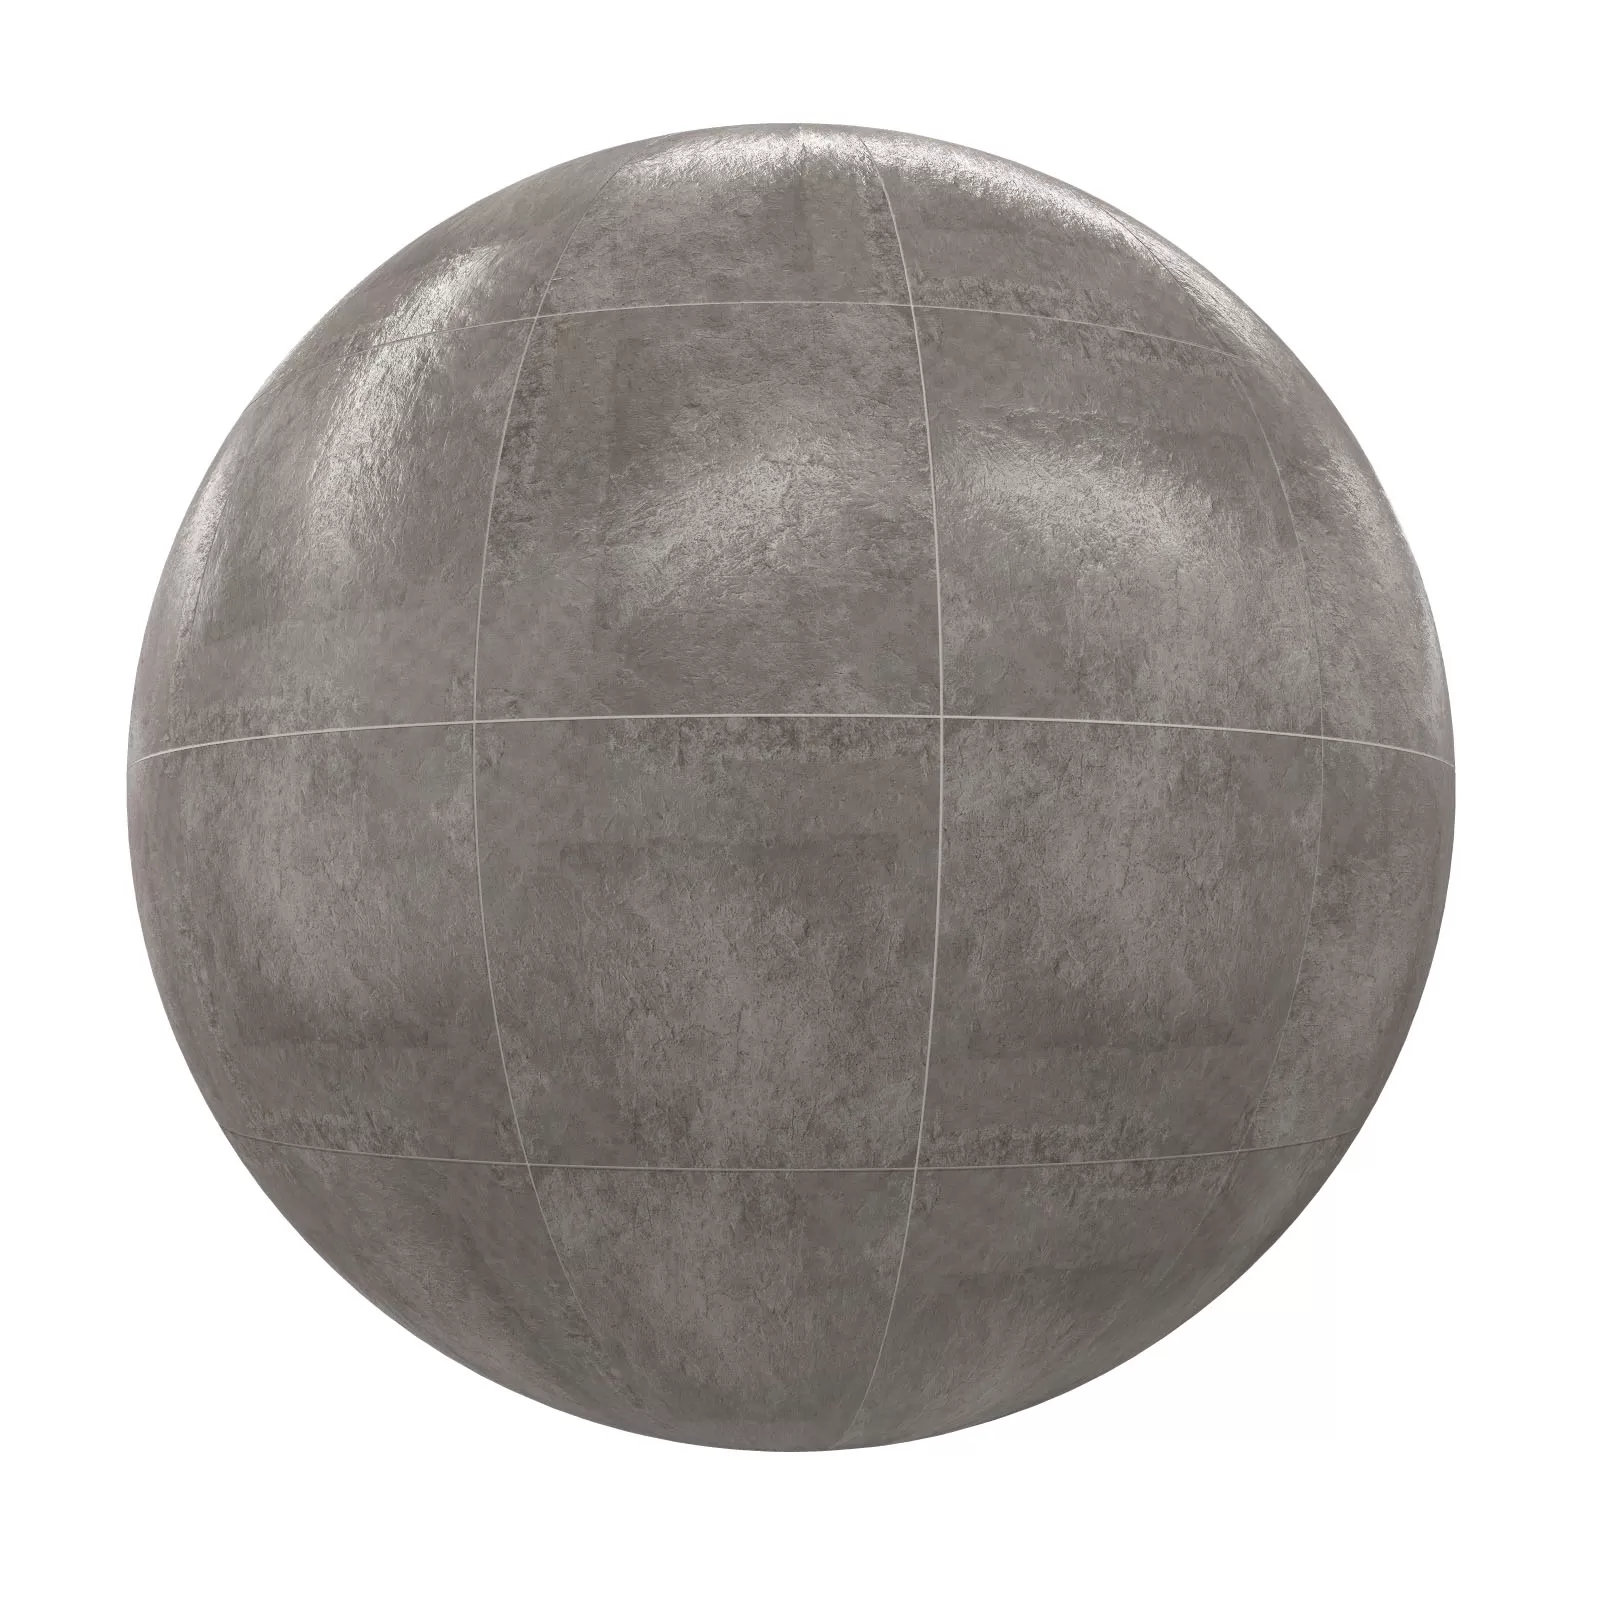 PBR CGAXIS TEXTURES – TILES – Grey Tiles 10